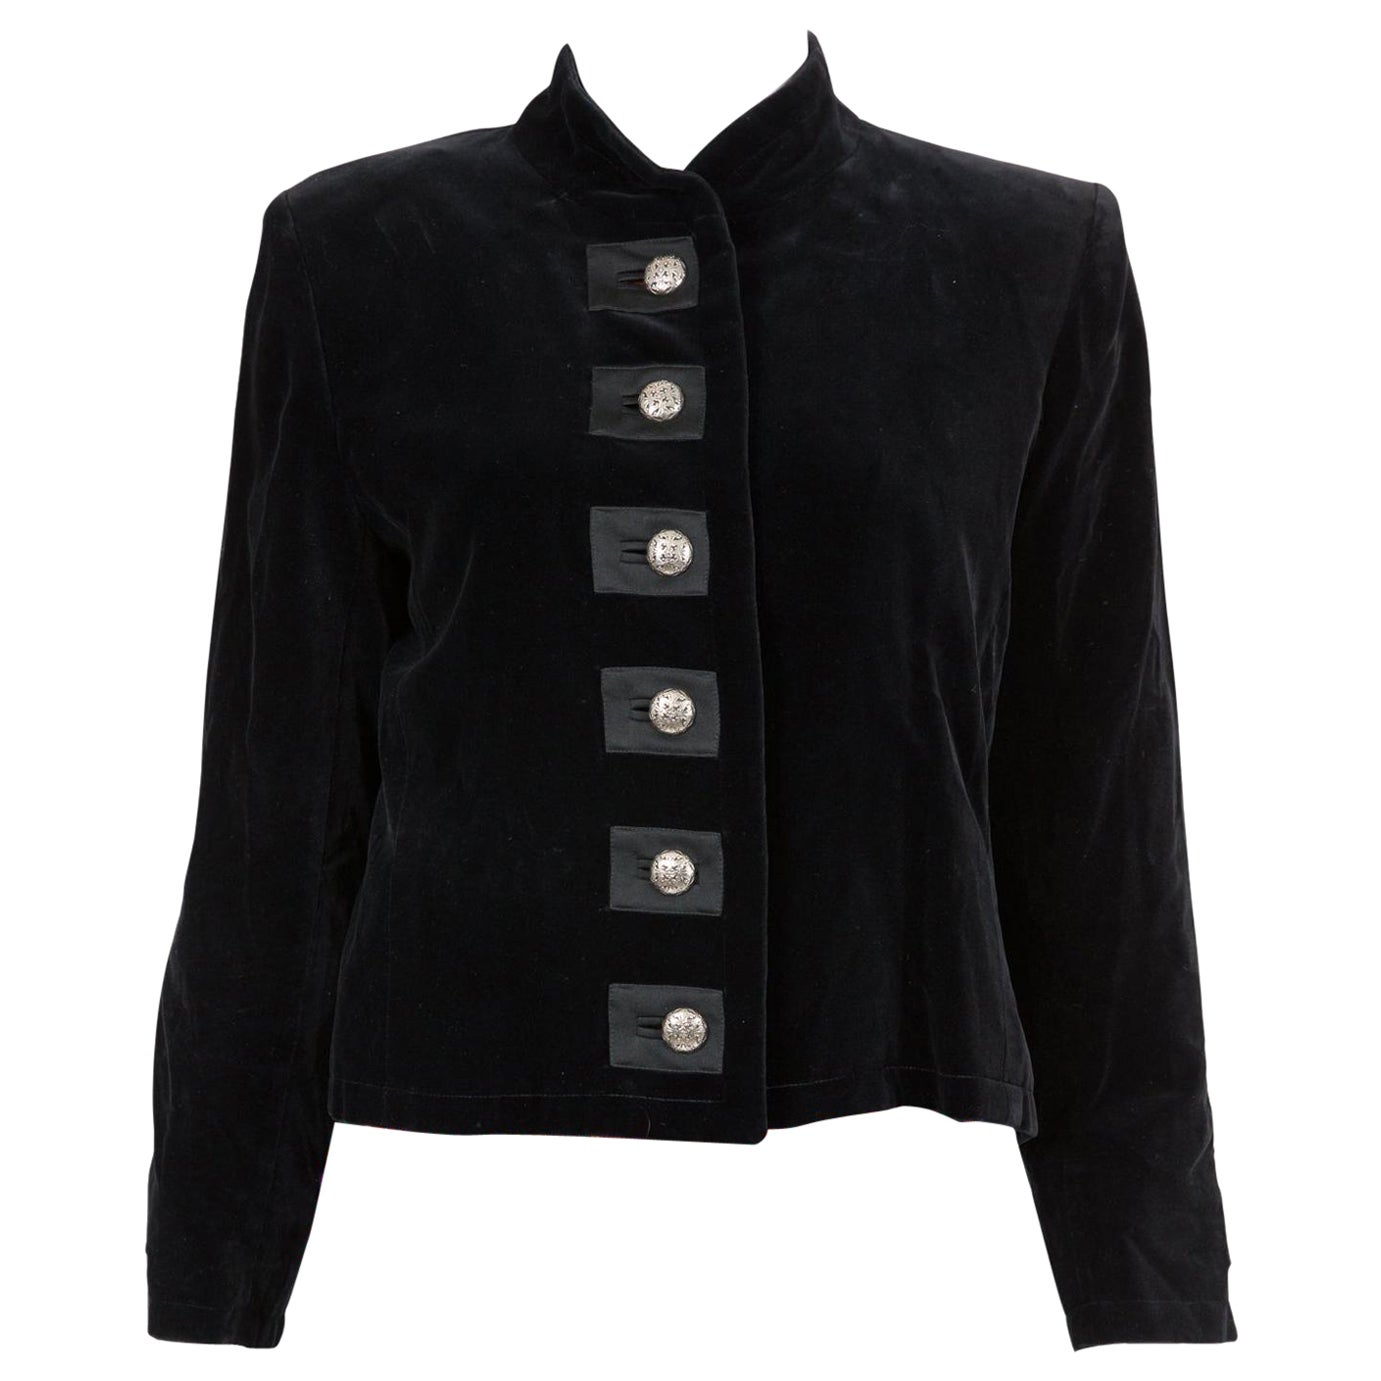 Iconic 1991s Yves Saint Laurent YSL Black Velvet Evening Jacket